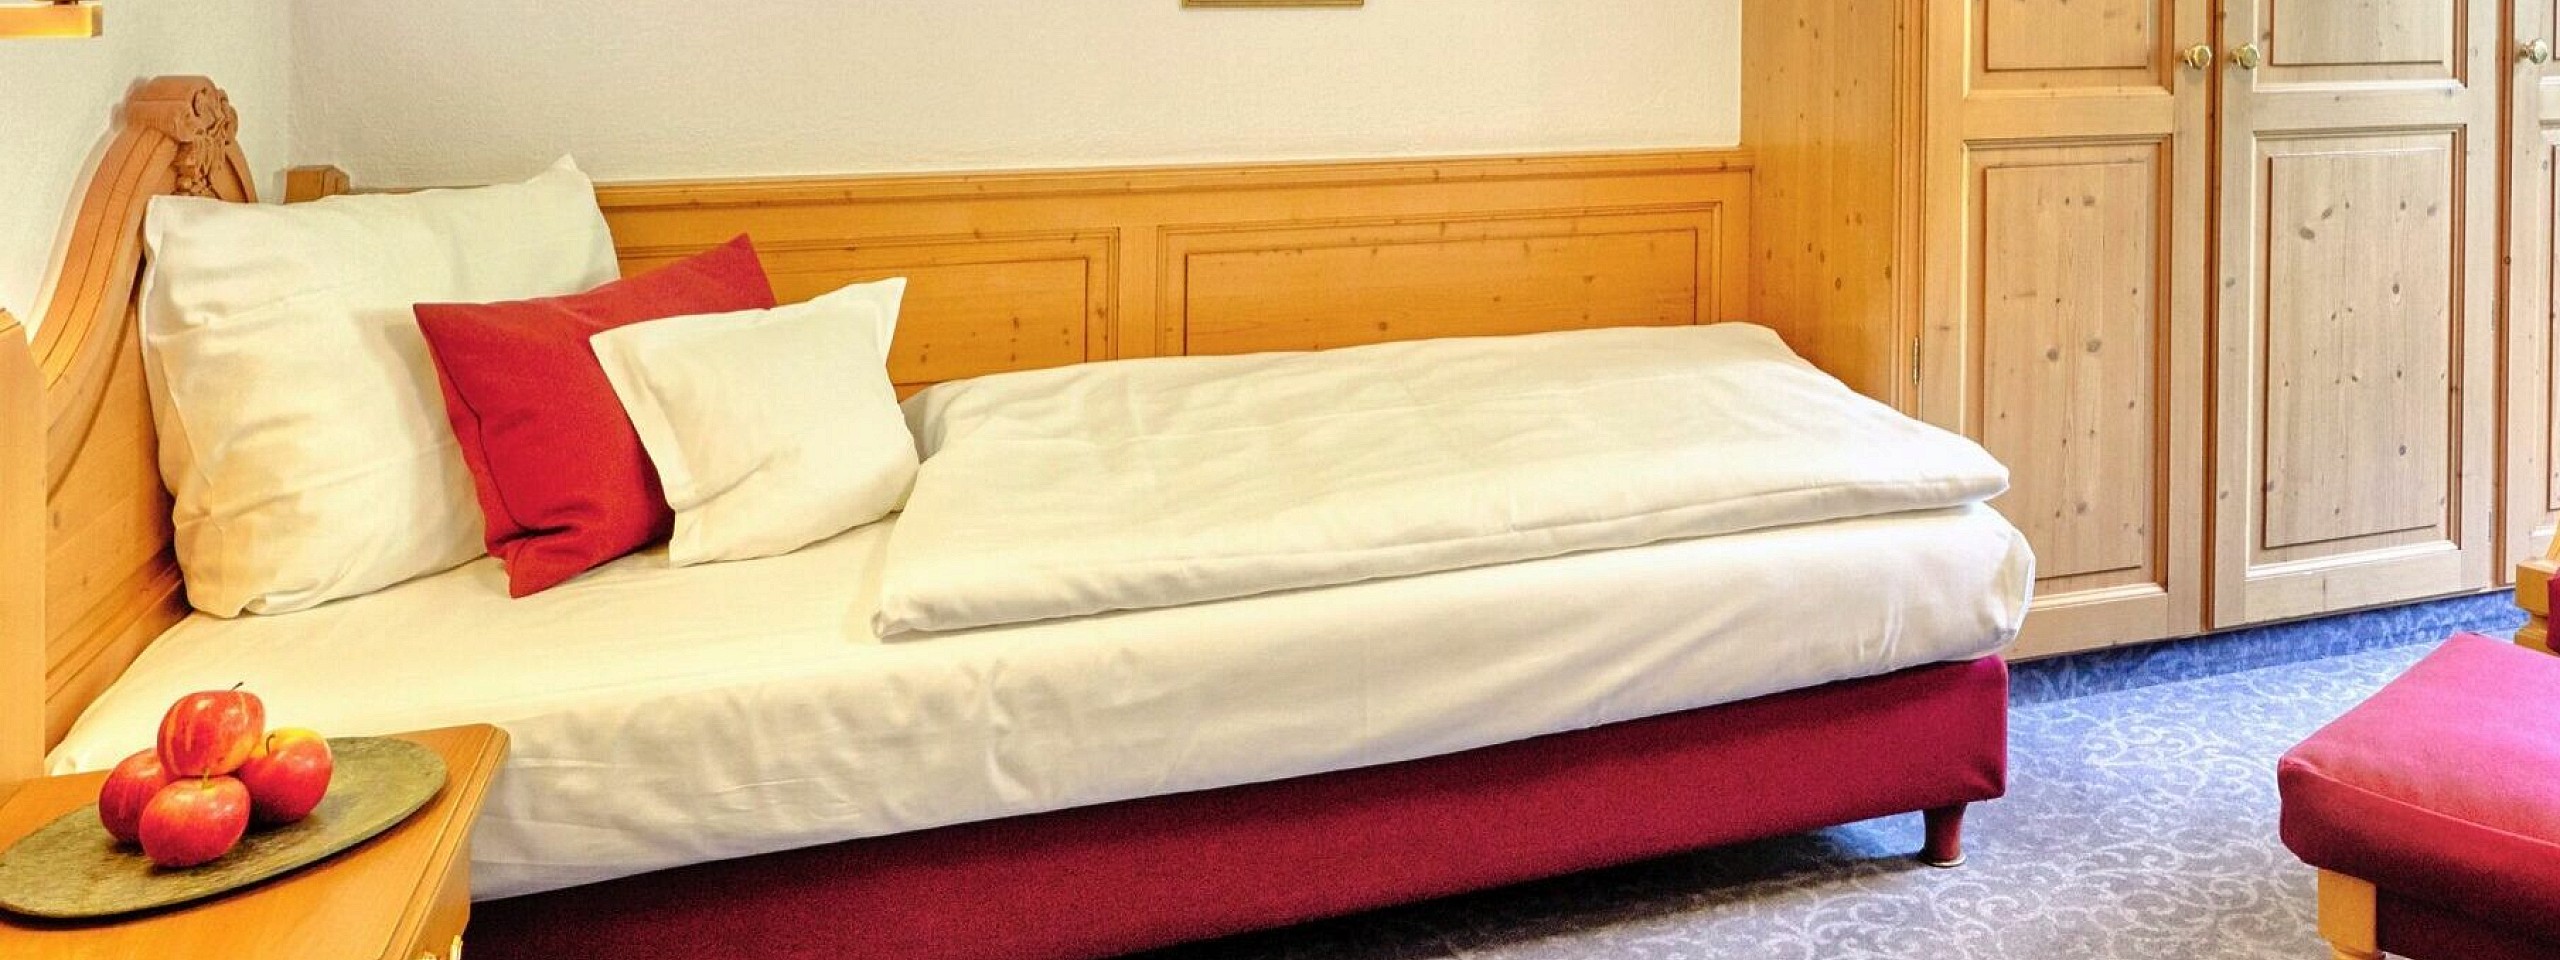 Single-Bett mit rotem Sessel und hölzernem Kleiderschrank im Hotelzimmer im Schwarzwald.